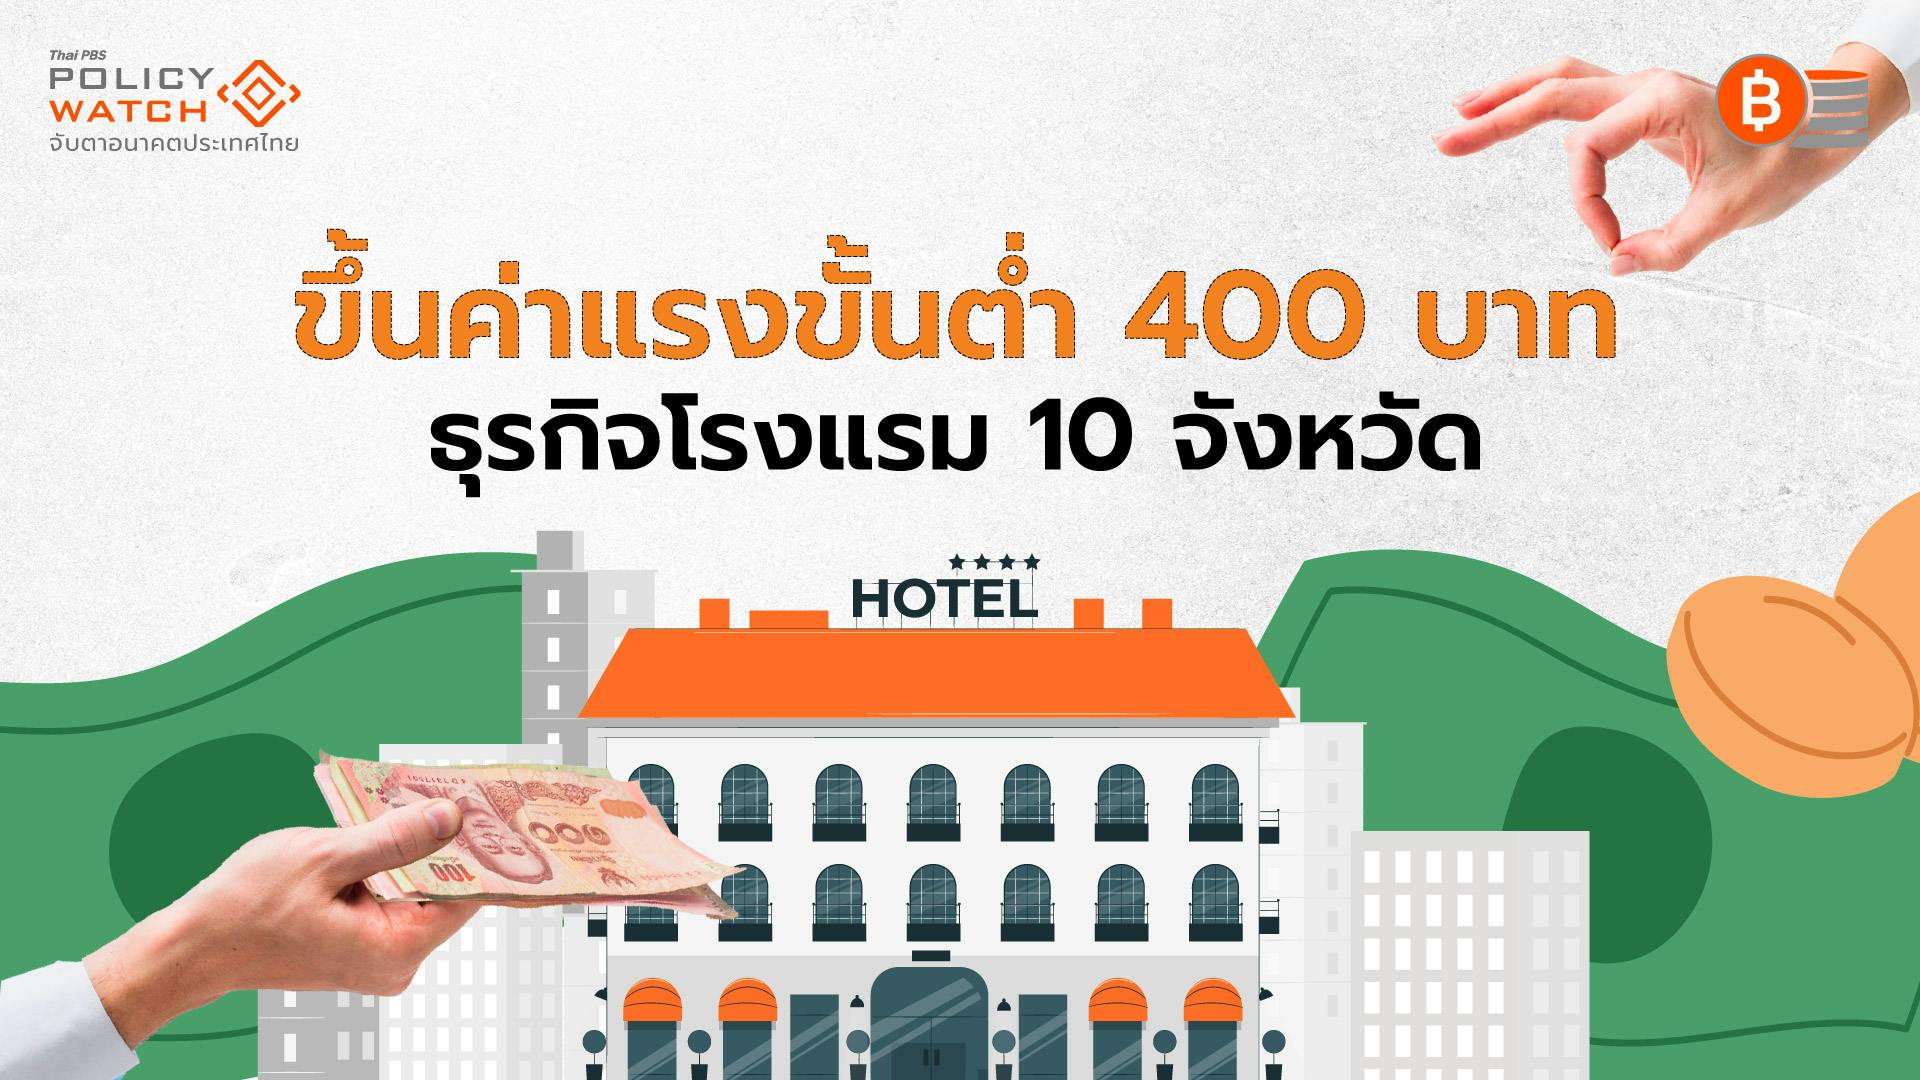 ขึ้นค่าแรงขั้นต่ำ 400 บาท ธุรกิจโรงแรมใน 10 จังหวัด มีผล 13 เม.ย. 67